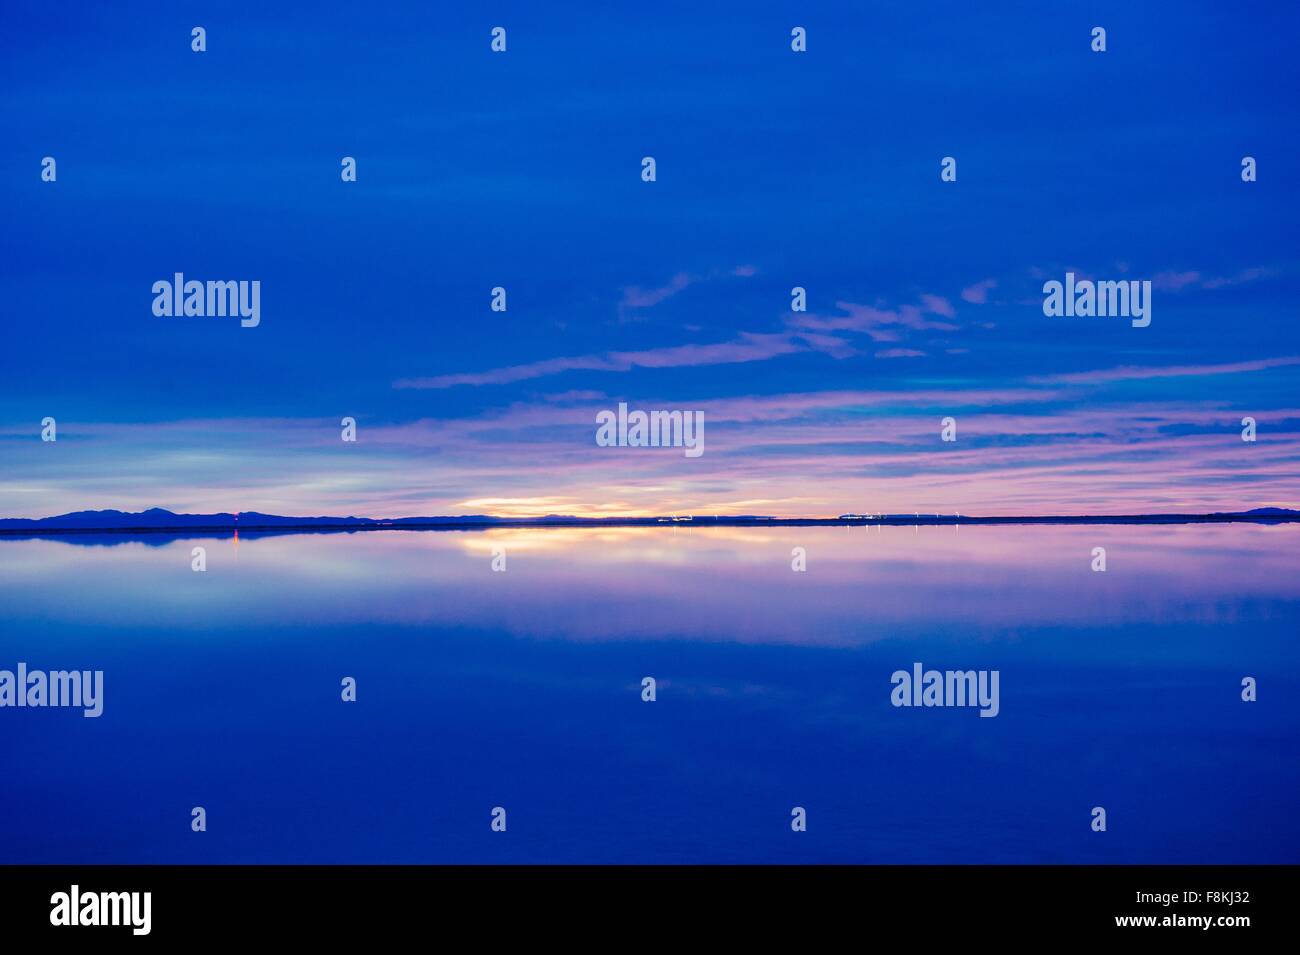 Piscina de horizonte de reflexión sobre el agua, azul cielo nocturno y el atardecer, Bonneville, Utah, EE.UU. Foto de stock